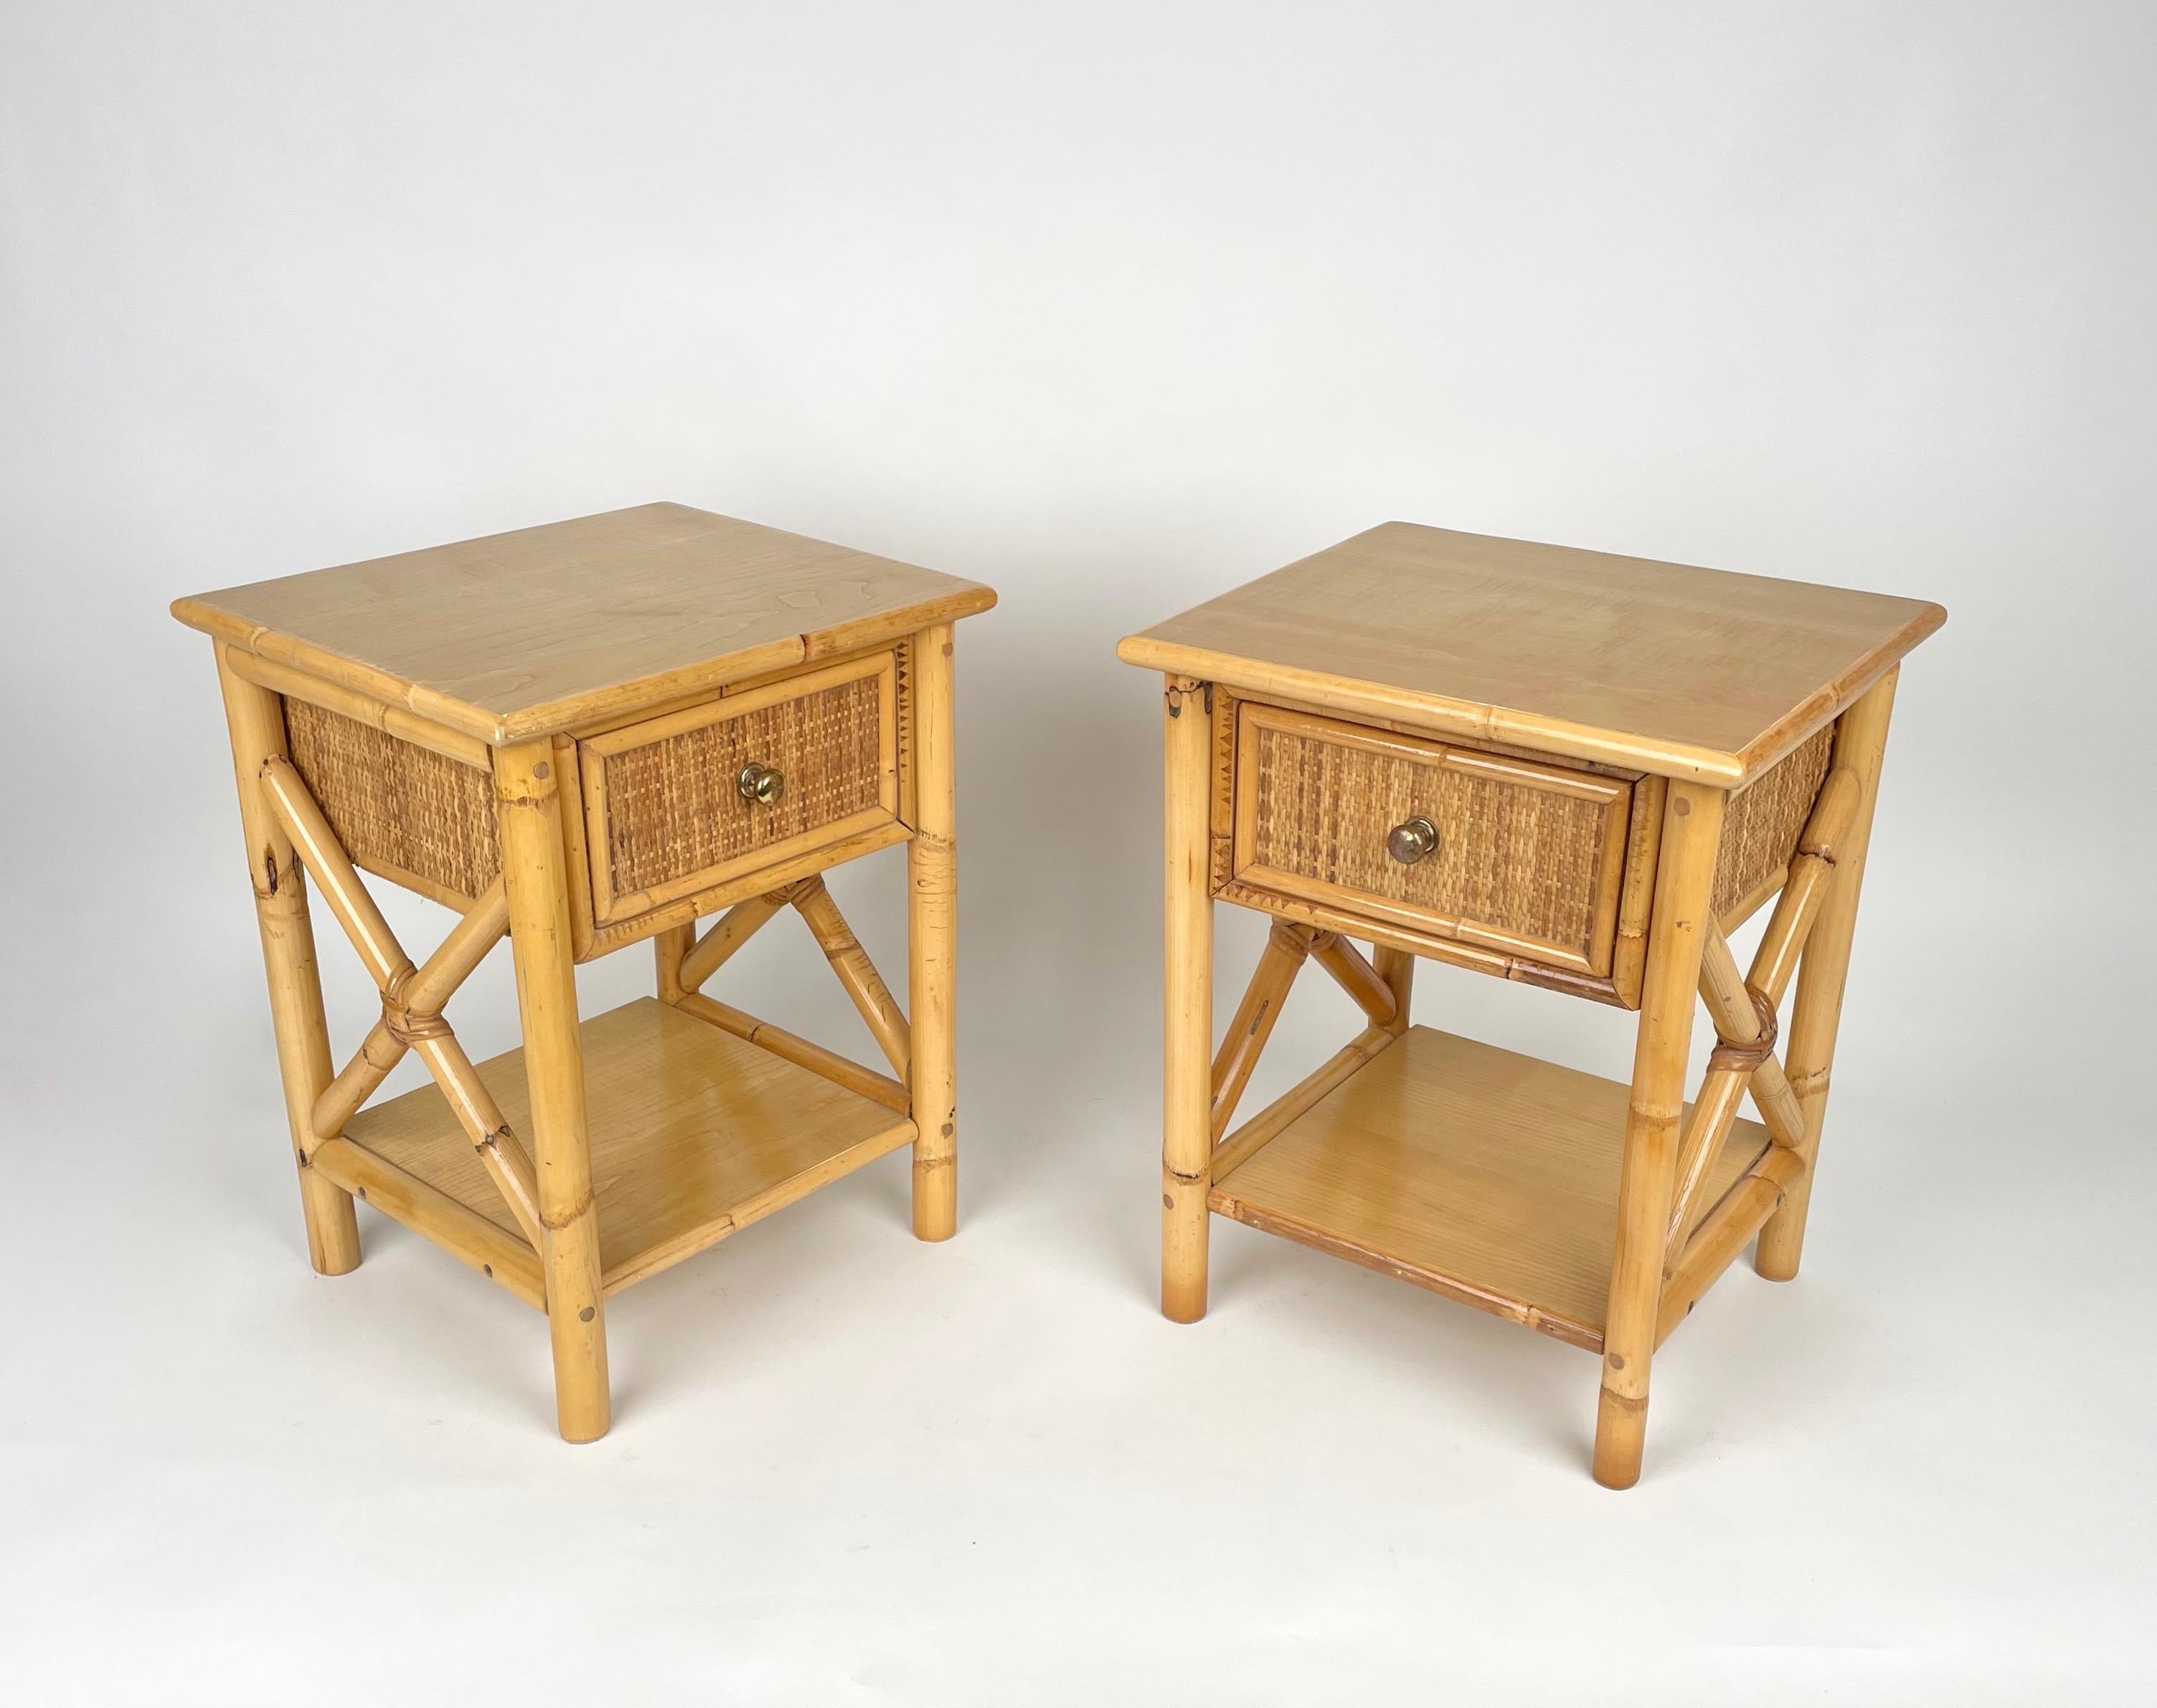 Paire de tables de chevet en bambou et rotin avec tiroir doté d'une poignée en laiton et étagère inférieure en bois.

Fabriqué en Italie dans les années 1980.